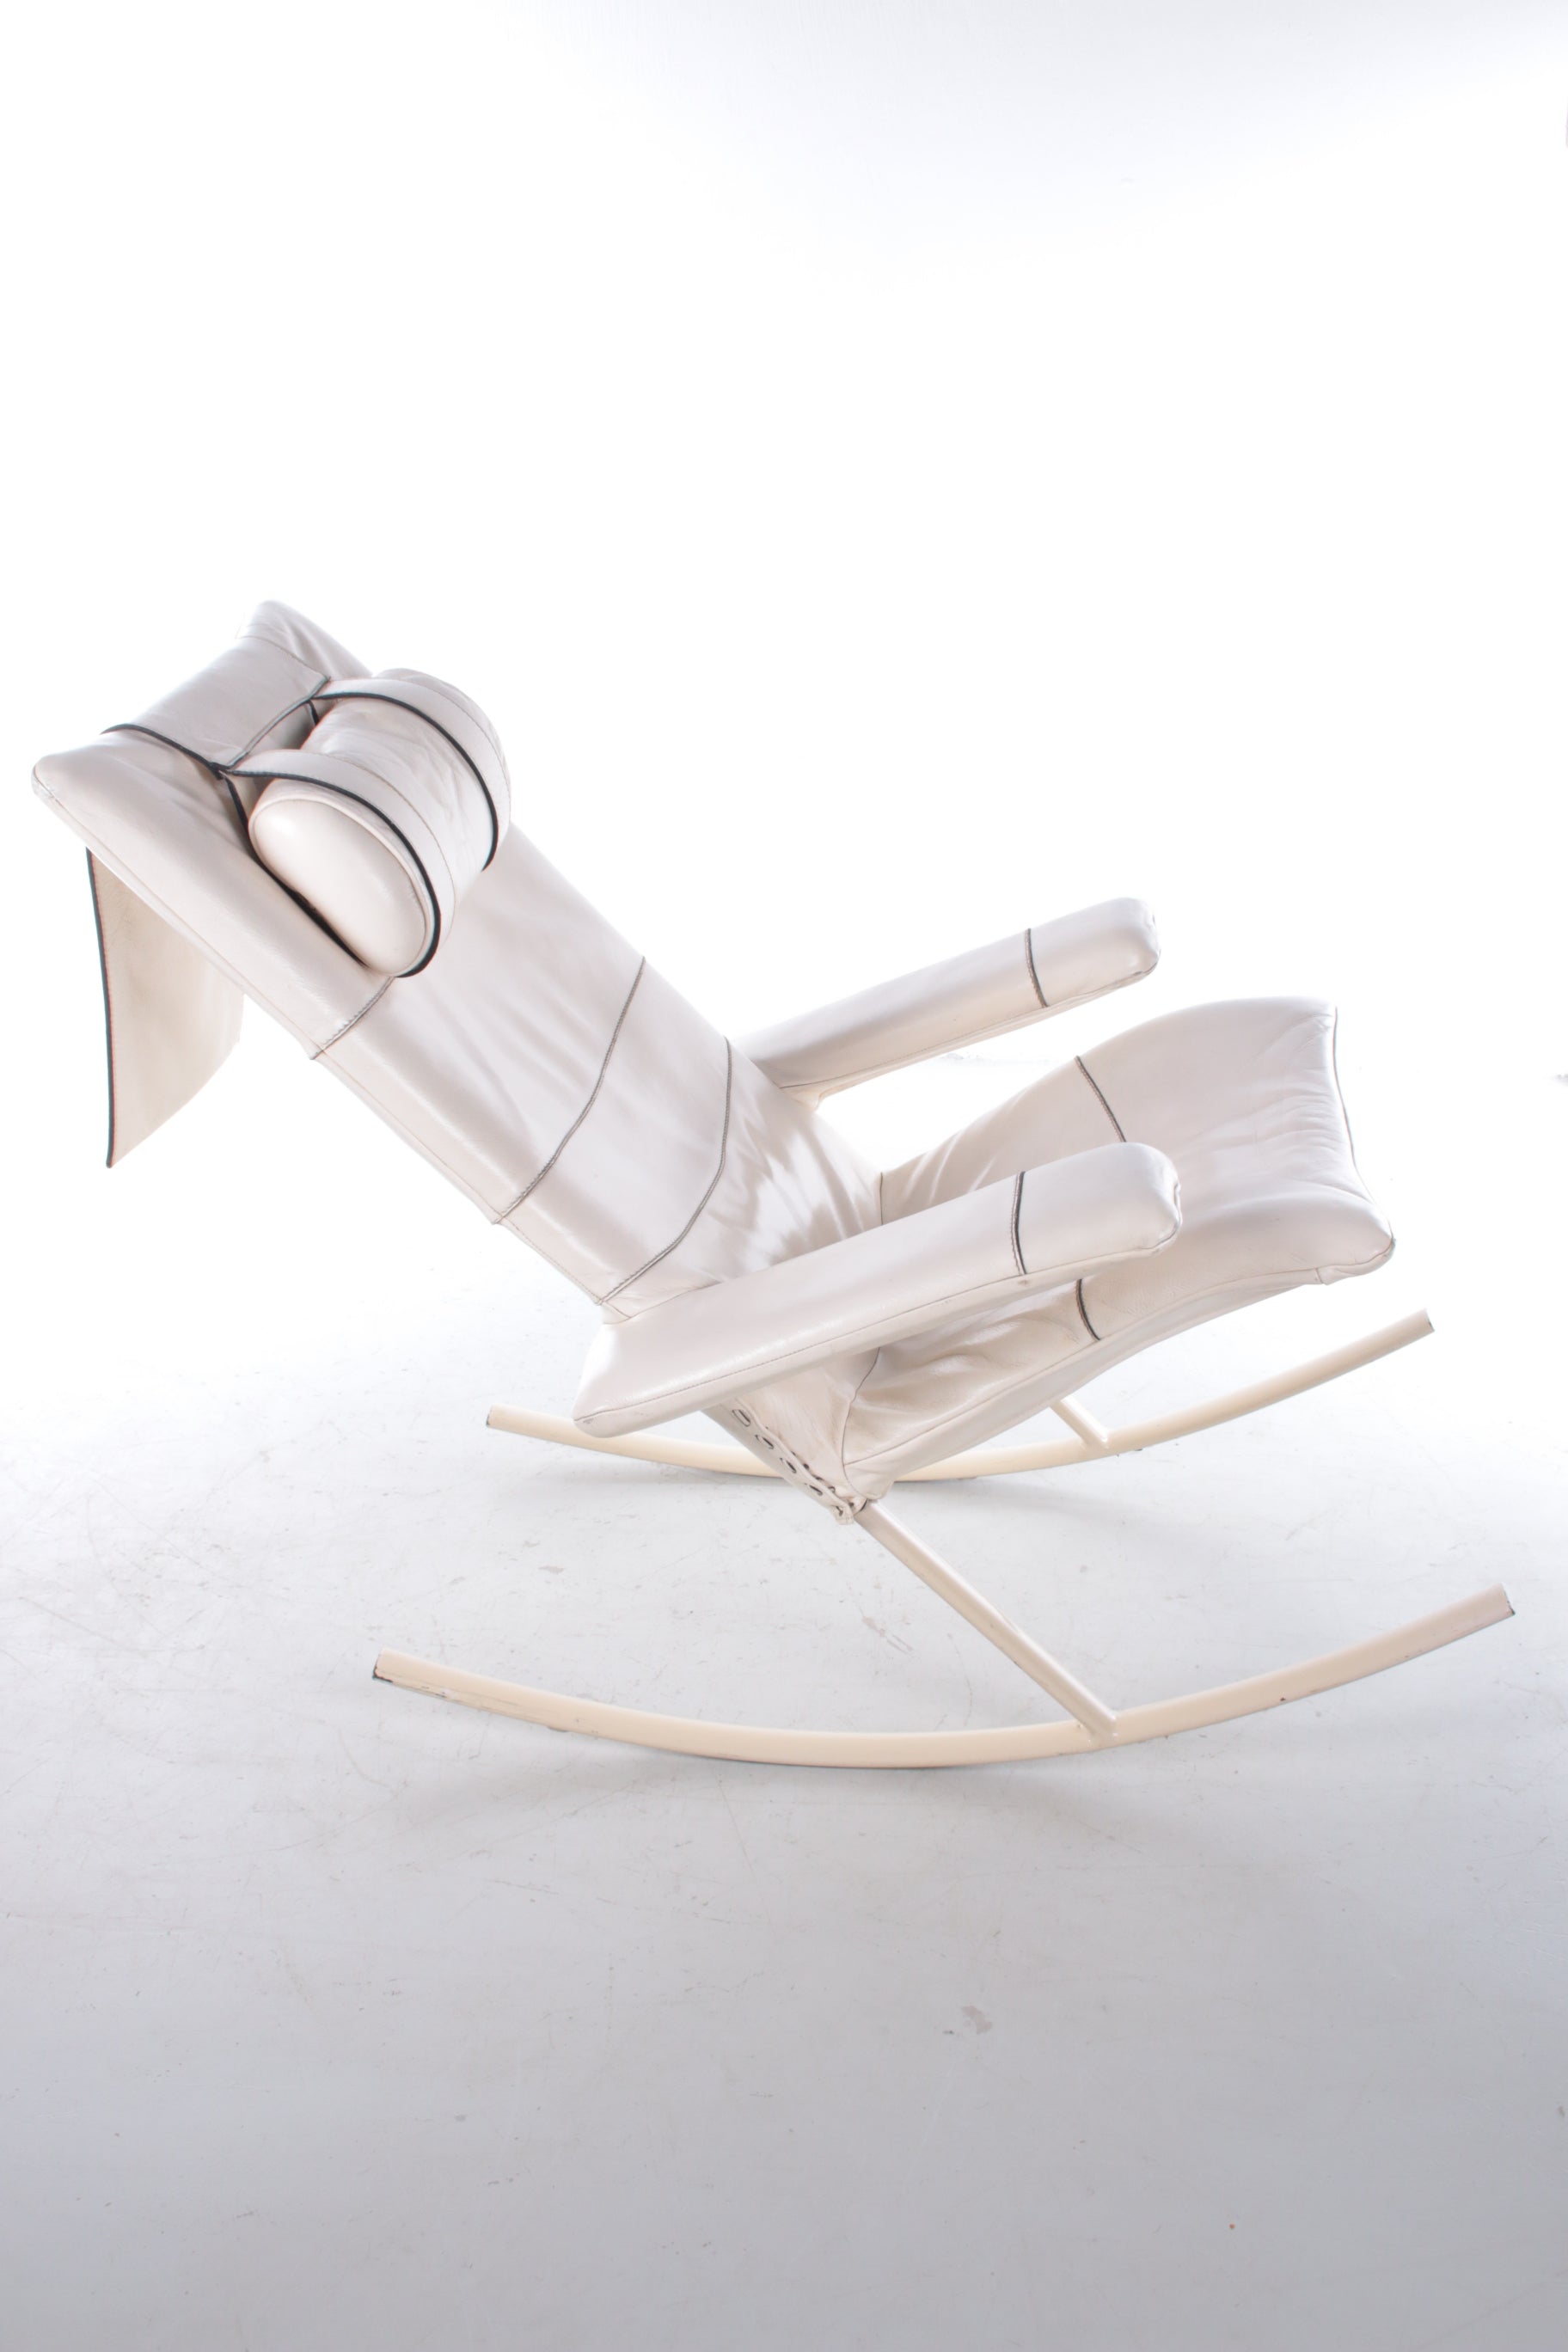 Wit leren schommelstoel Design van Jori,Belgie 1960s zijkant